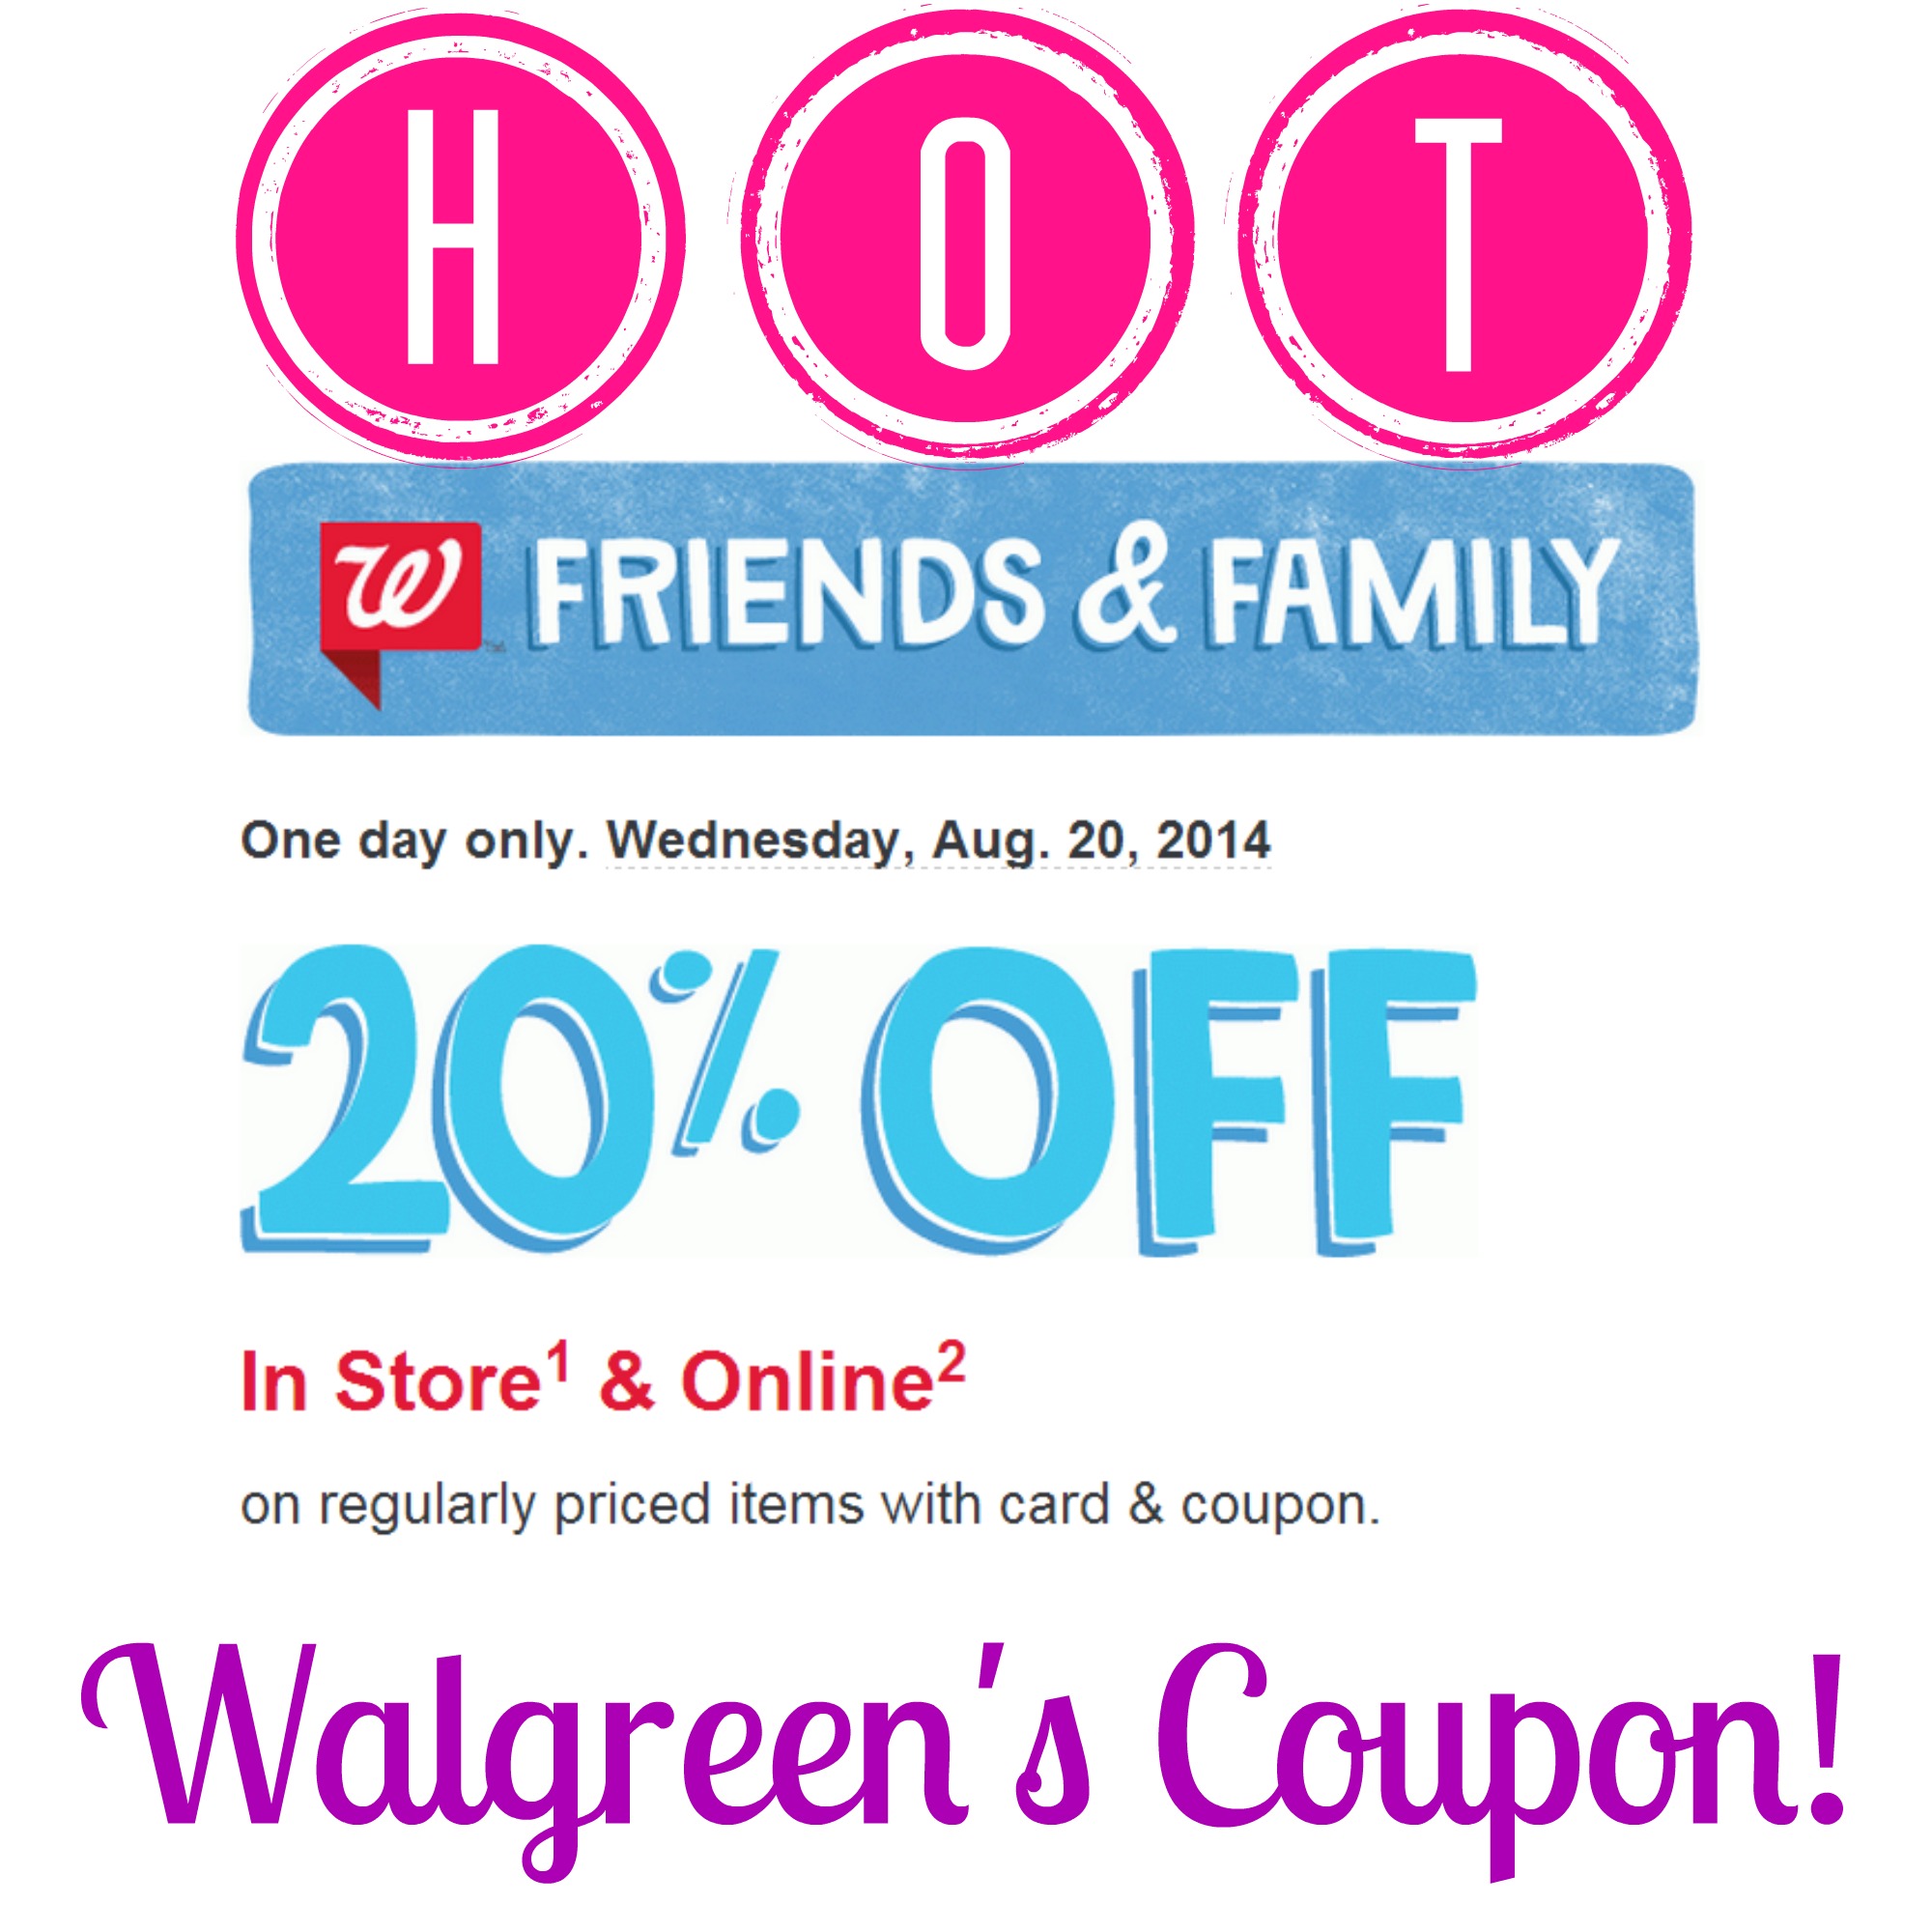 HOT! Rare 20% Off at Walgreen’s Coupon!